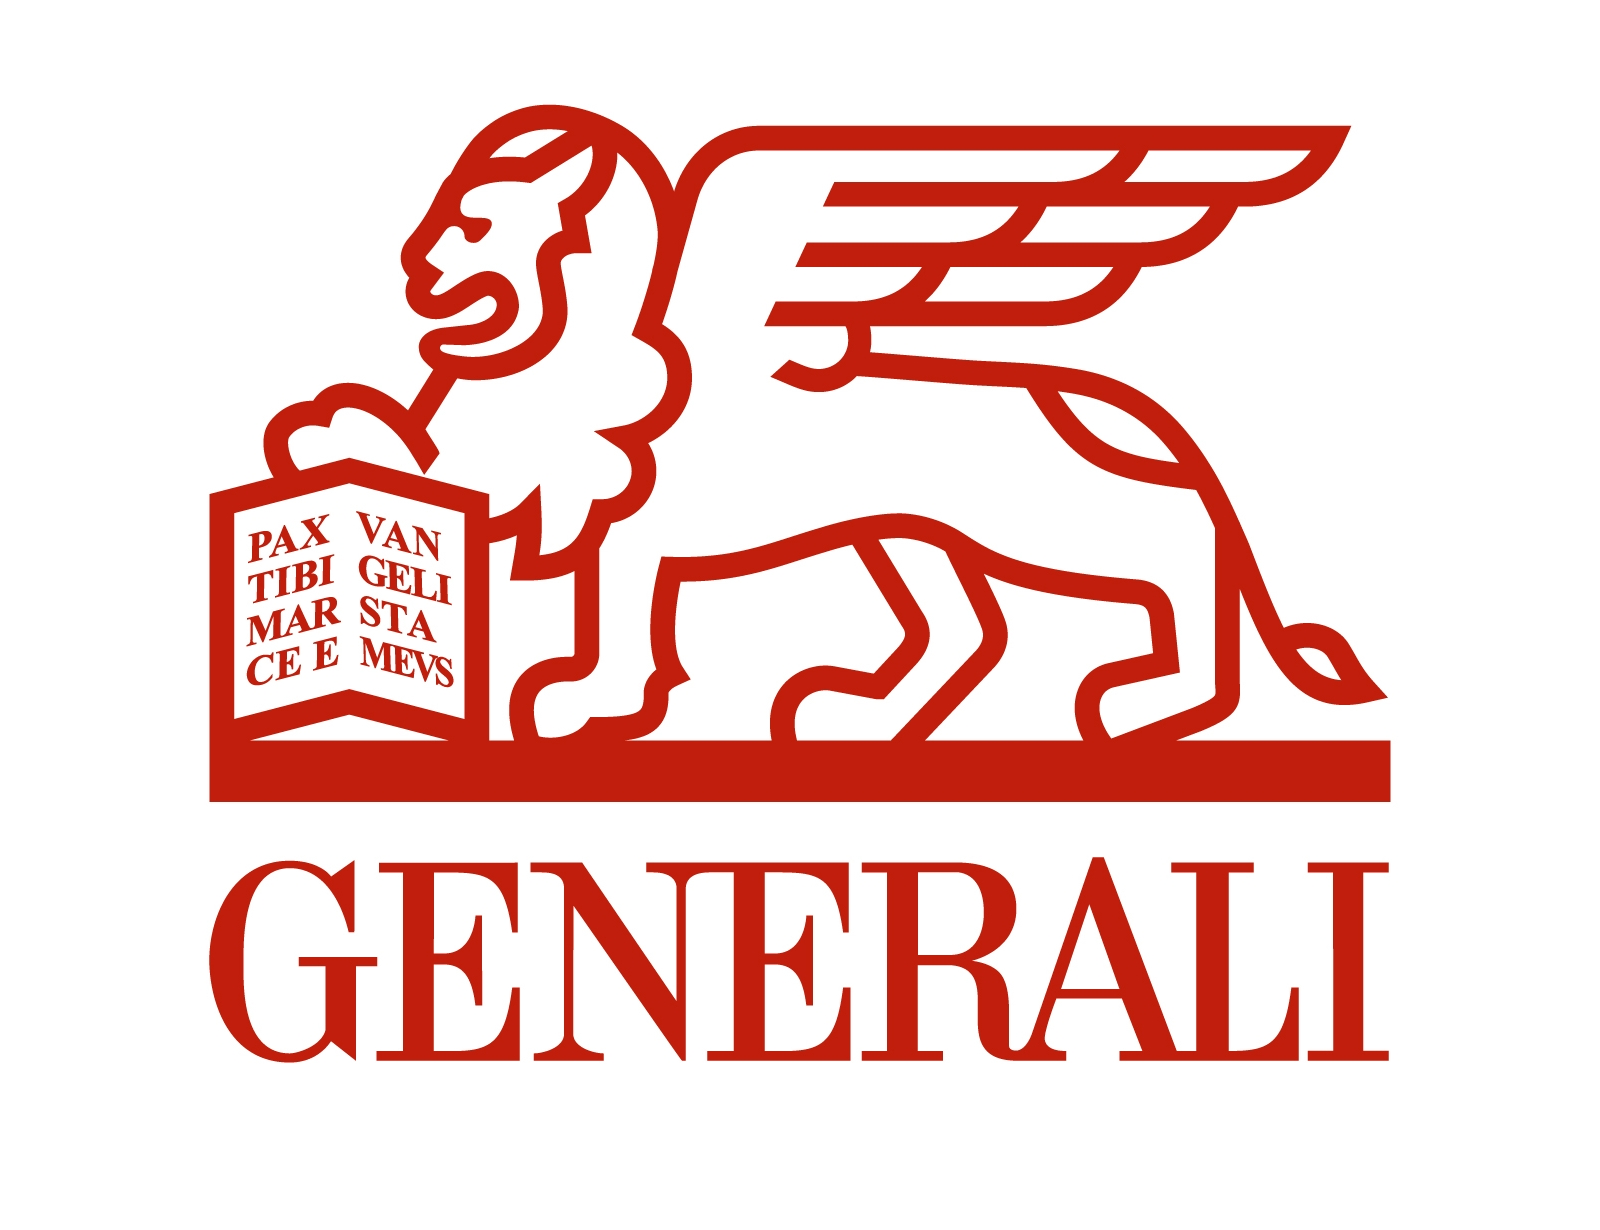 Nagy dobásra készül a Generali, helyezkednek a tulajdonosok - Portfolio cikk